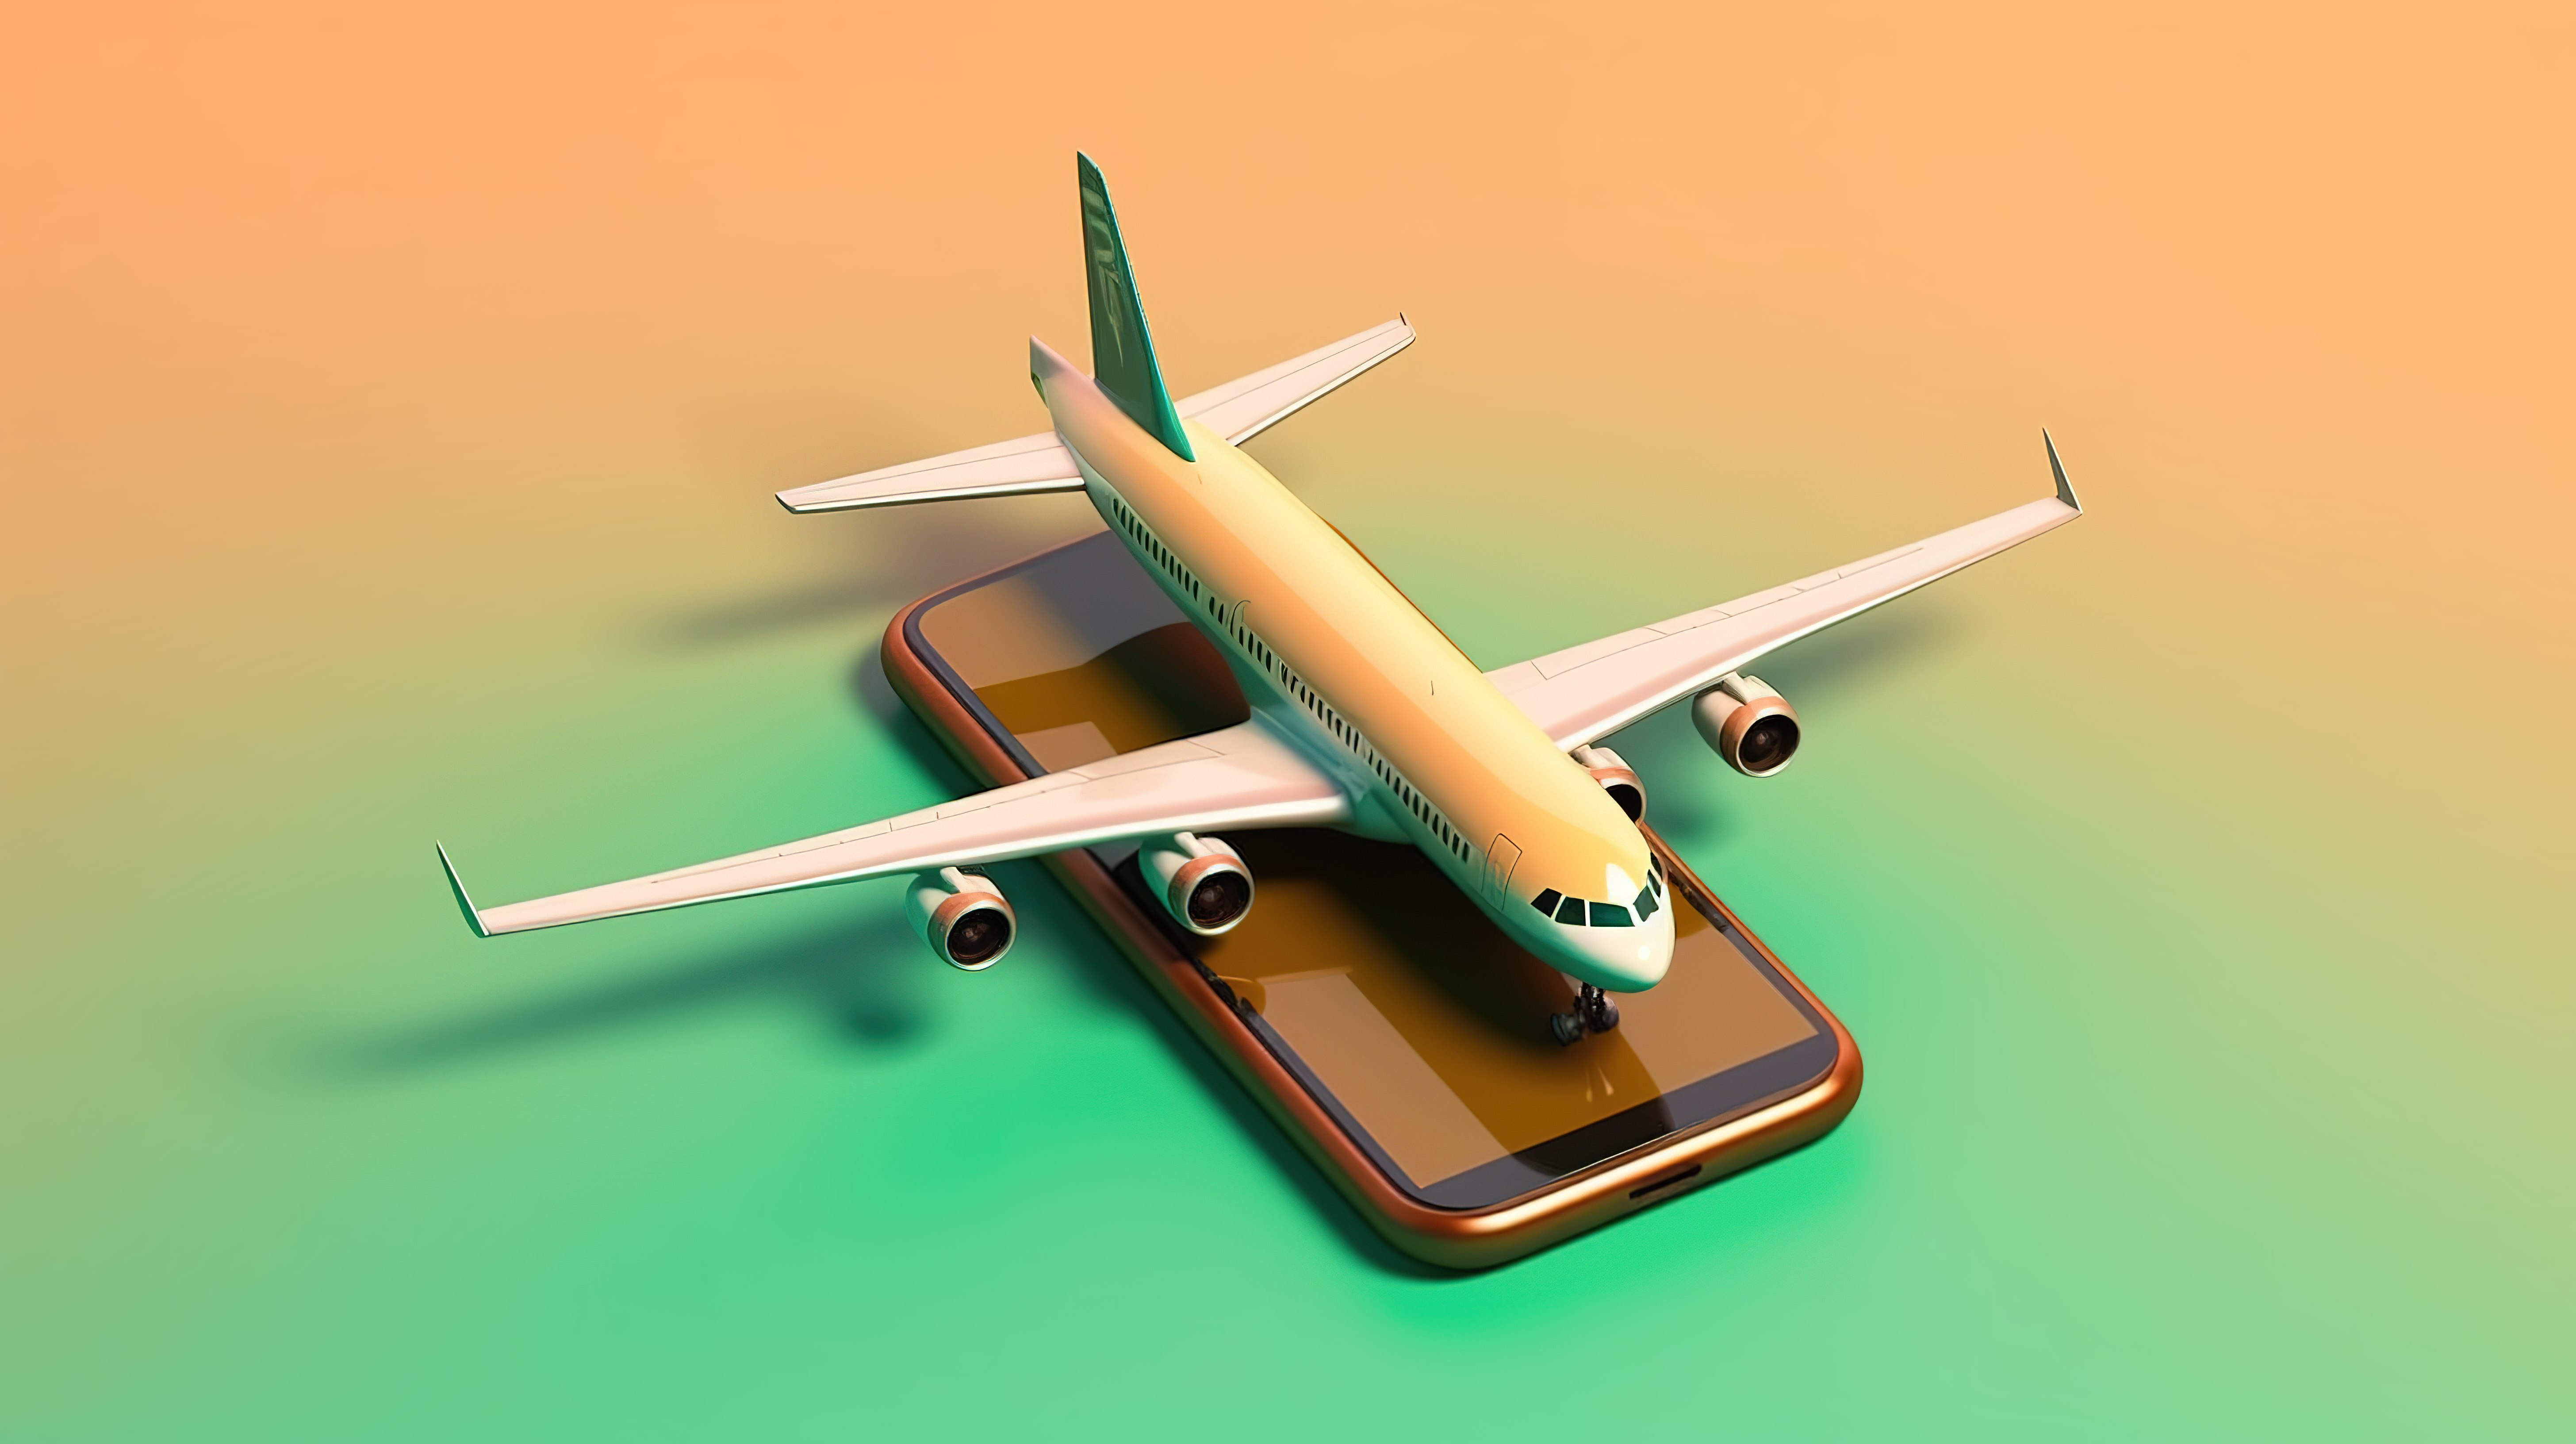 3D 风格的旅行搜索应用横幅，其中包含一部电话和一架飞机从其中飞出图片